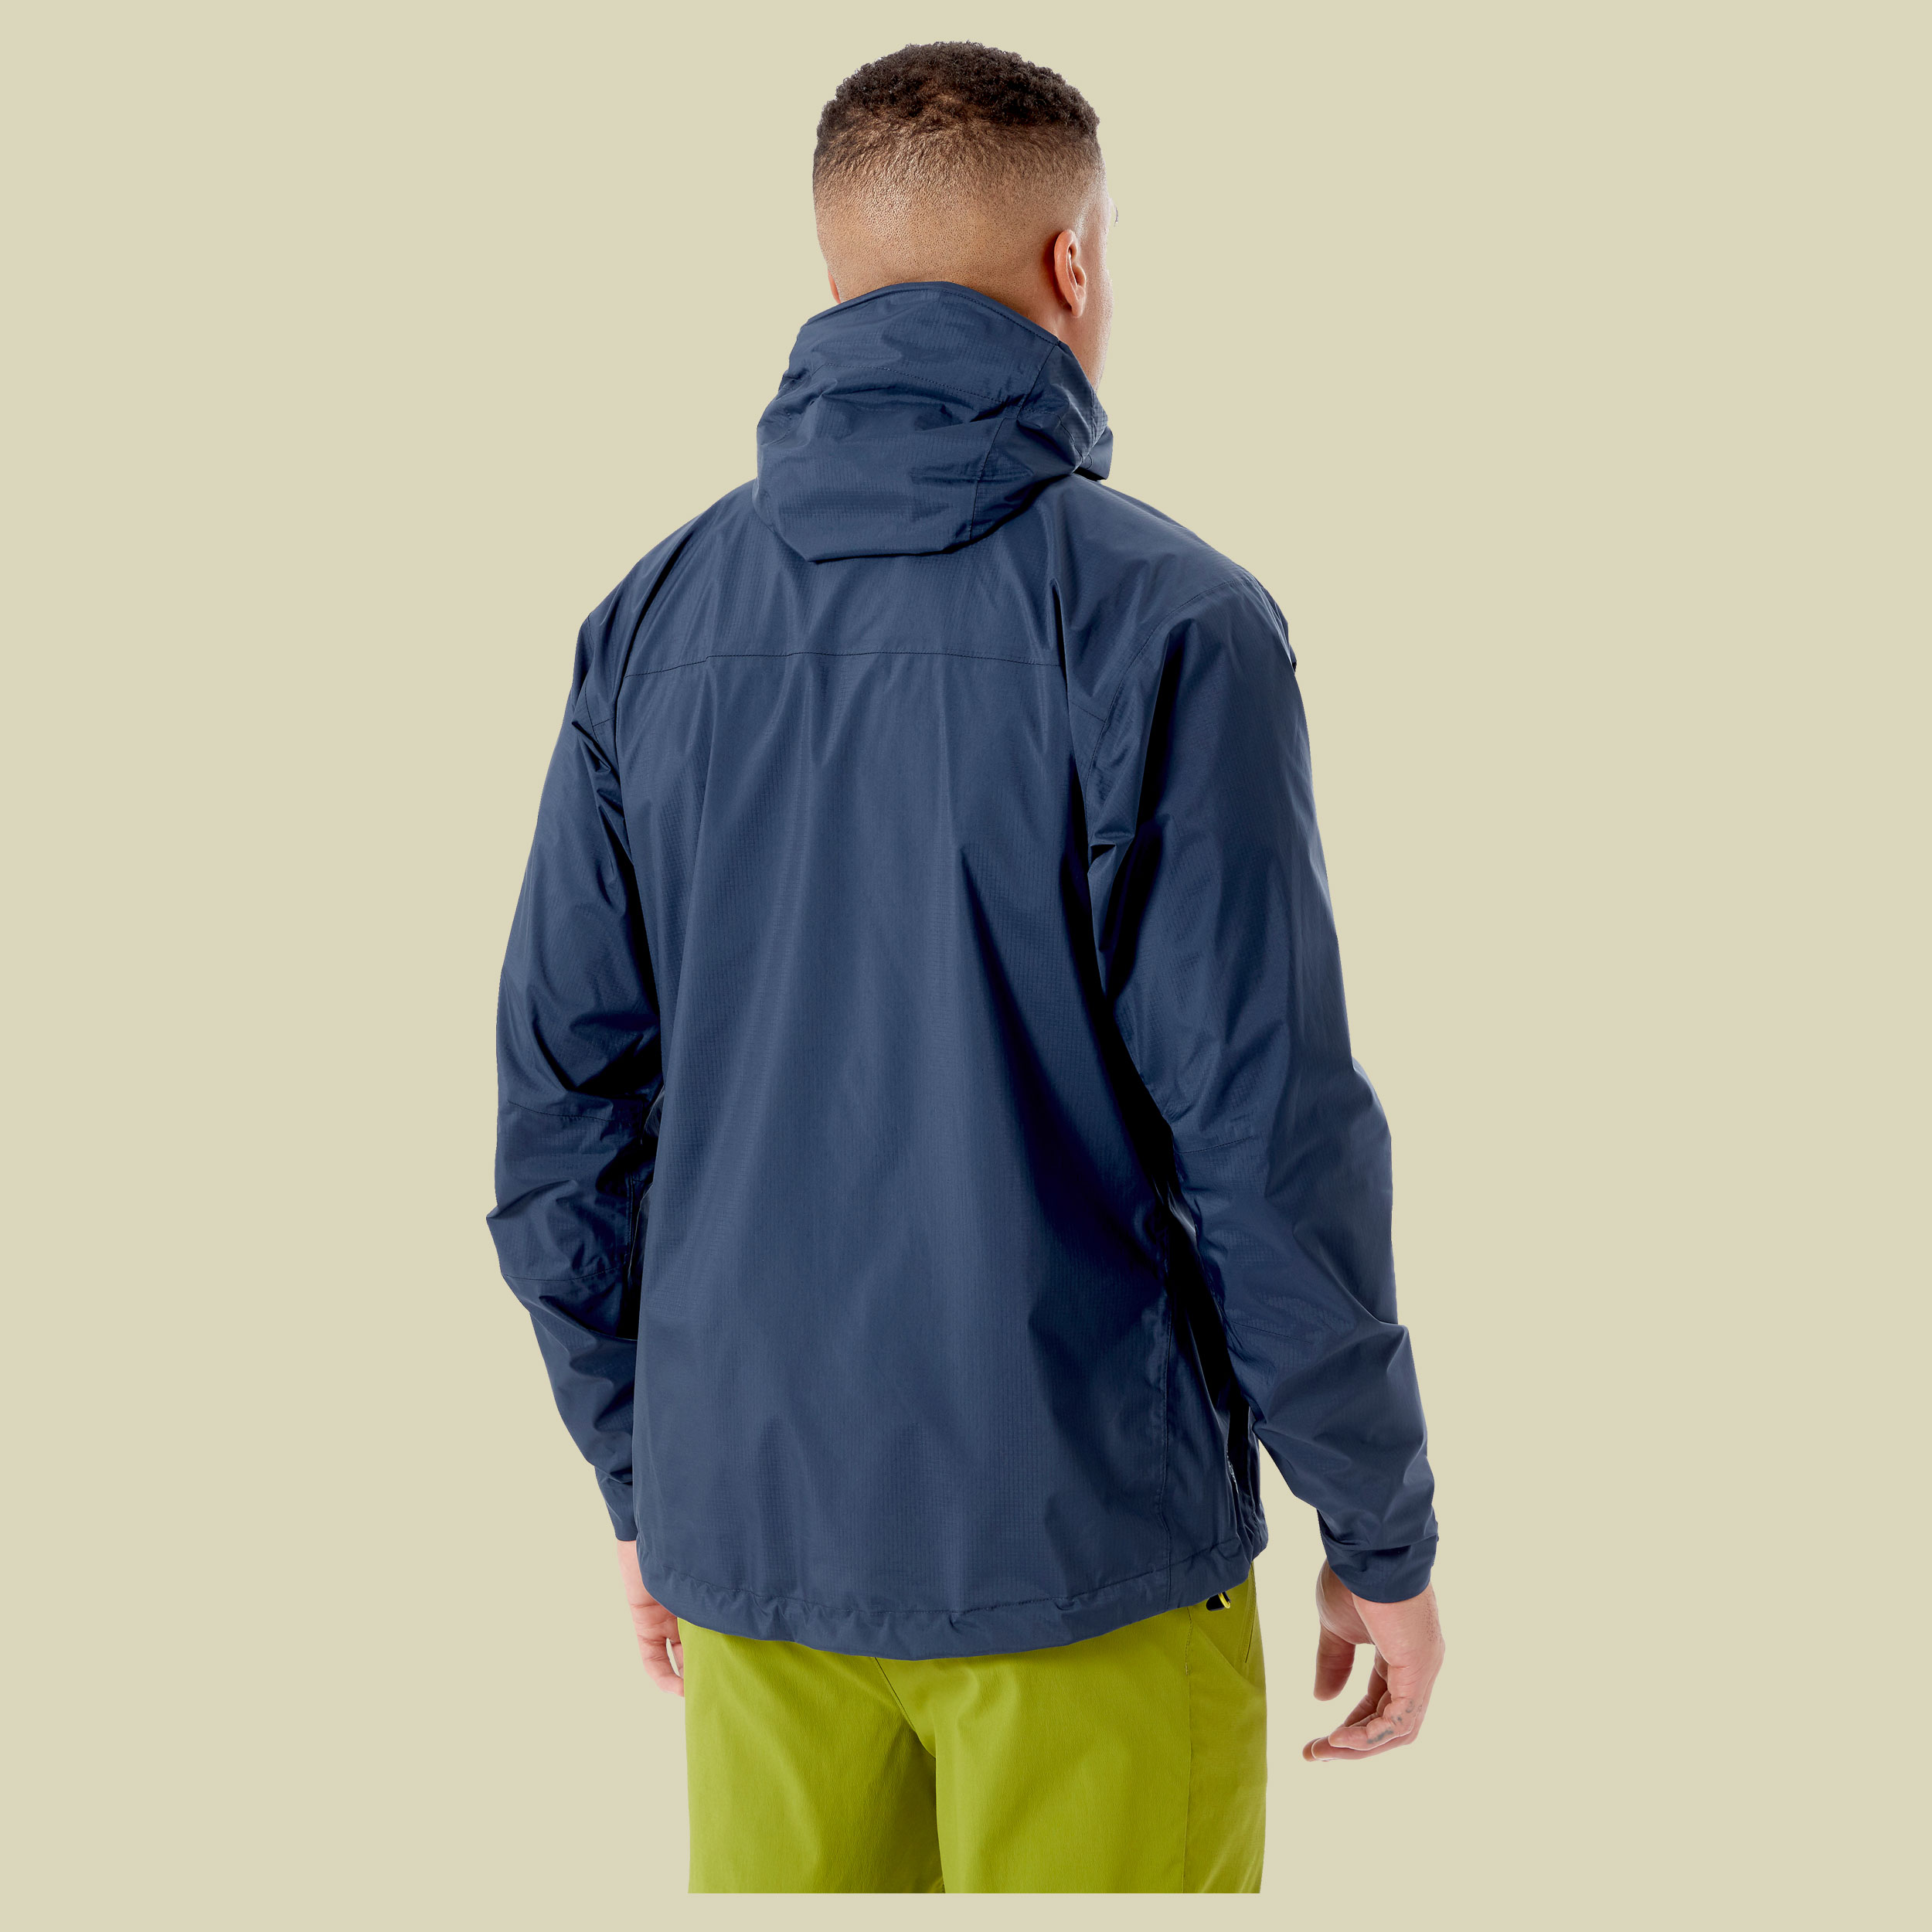 Downpour Plus 2.0 Jacket Men Größe S Farbe deep ink